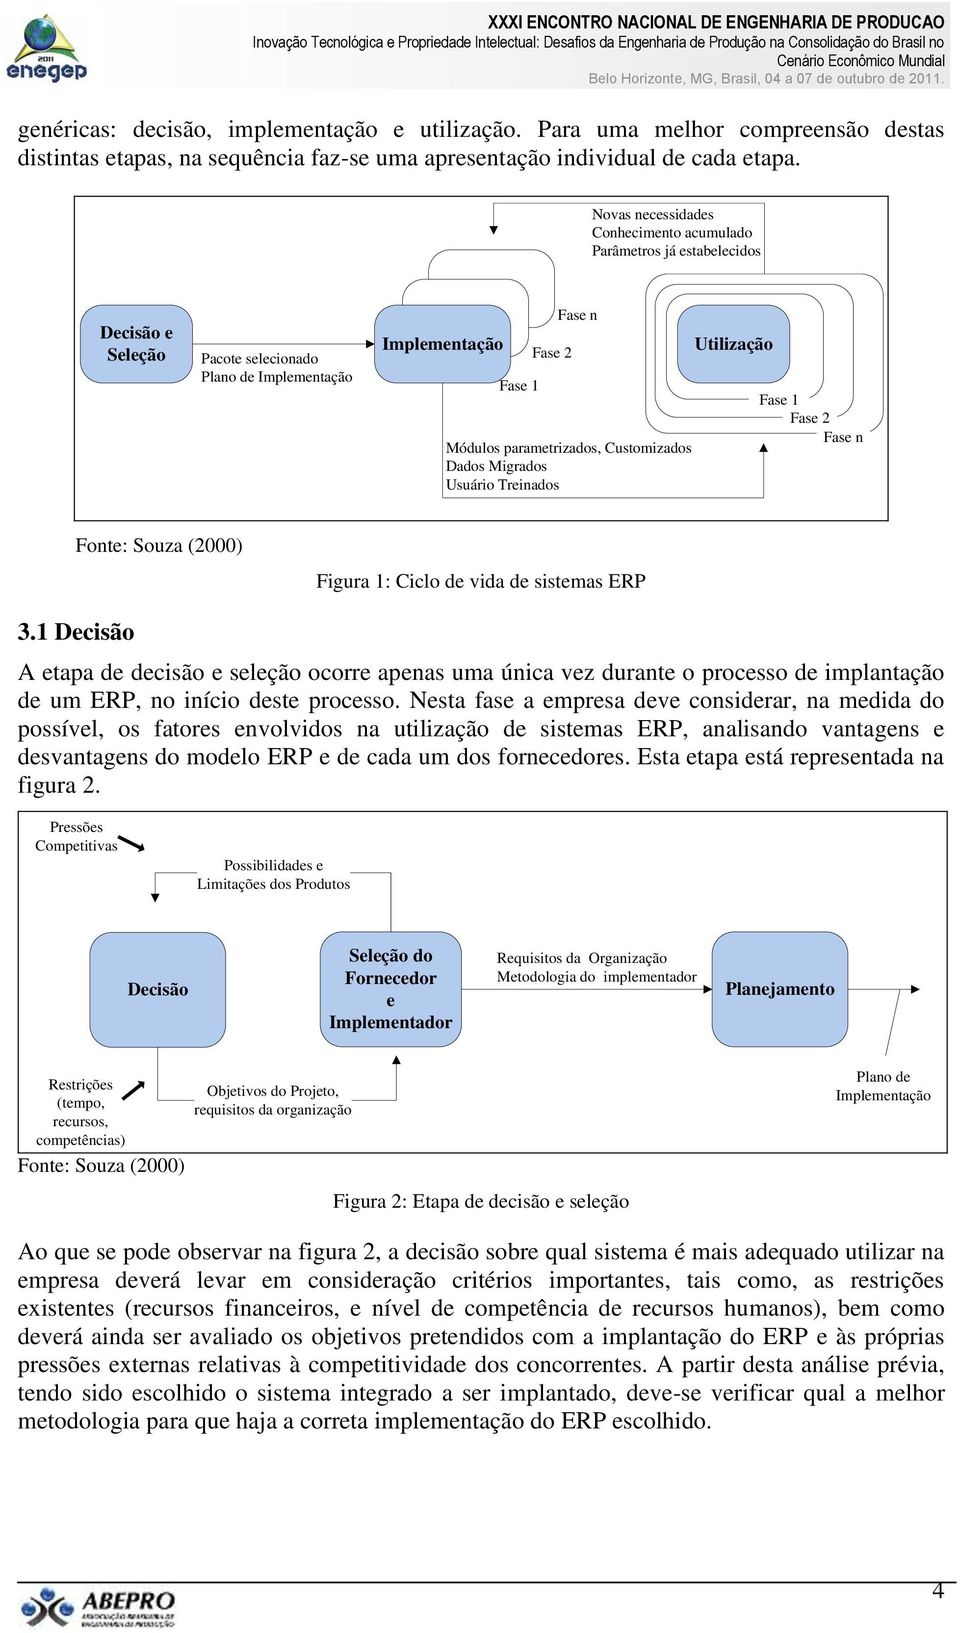 Customizados Dados Migrados Usuário Treinados Utilização Fase 1 Fase 2 Fase n Fonte: Souza (2000) Figura 1: Ciclo de vida de sistemas ERP 3.